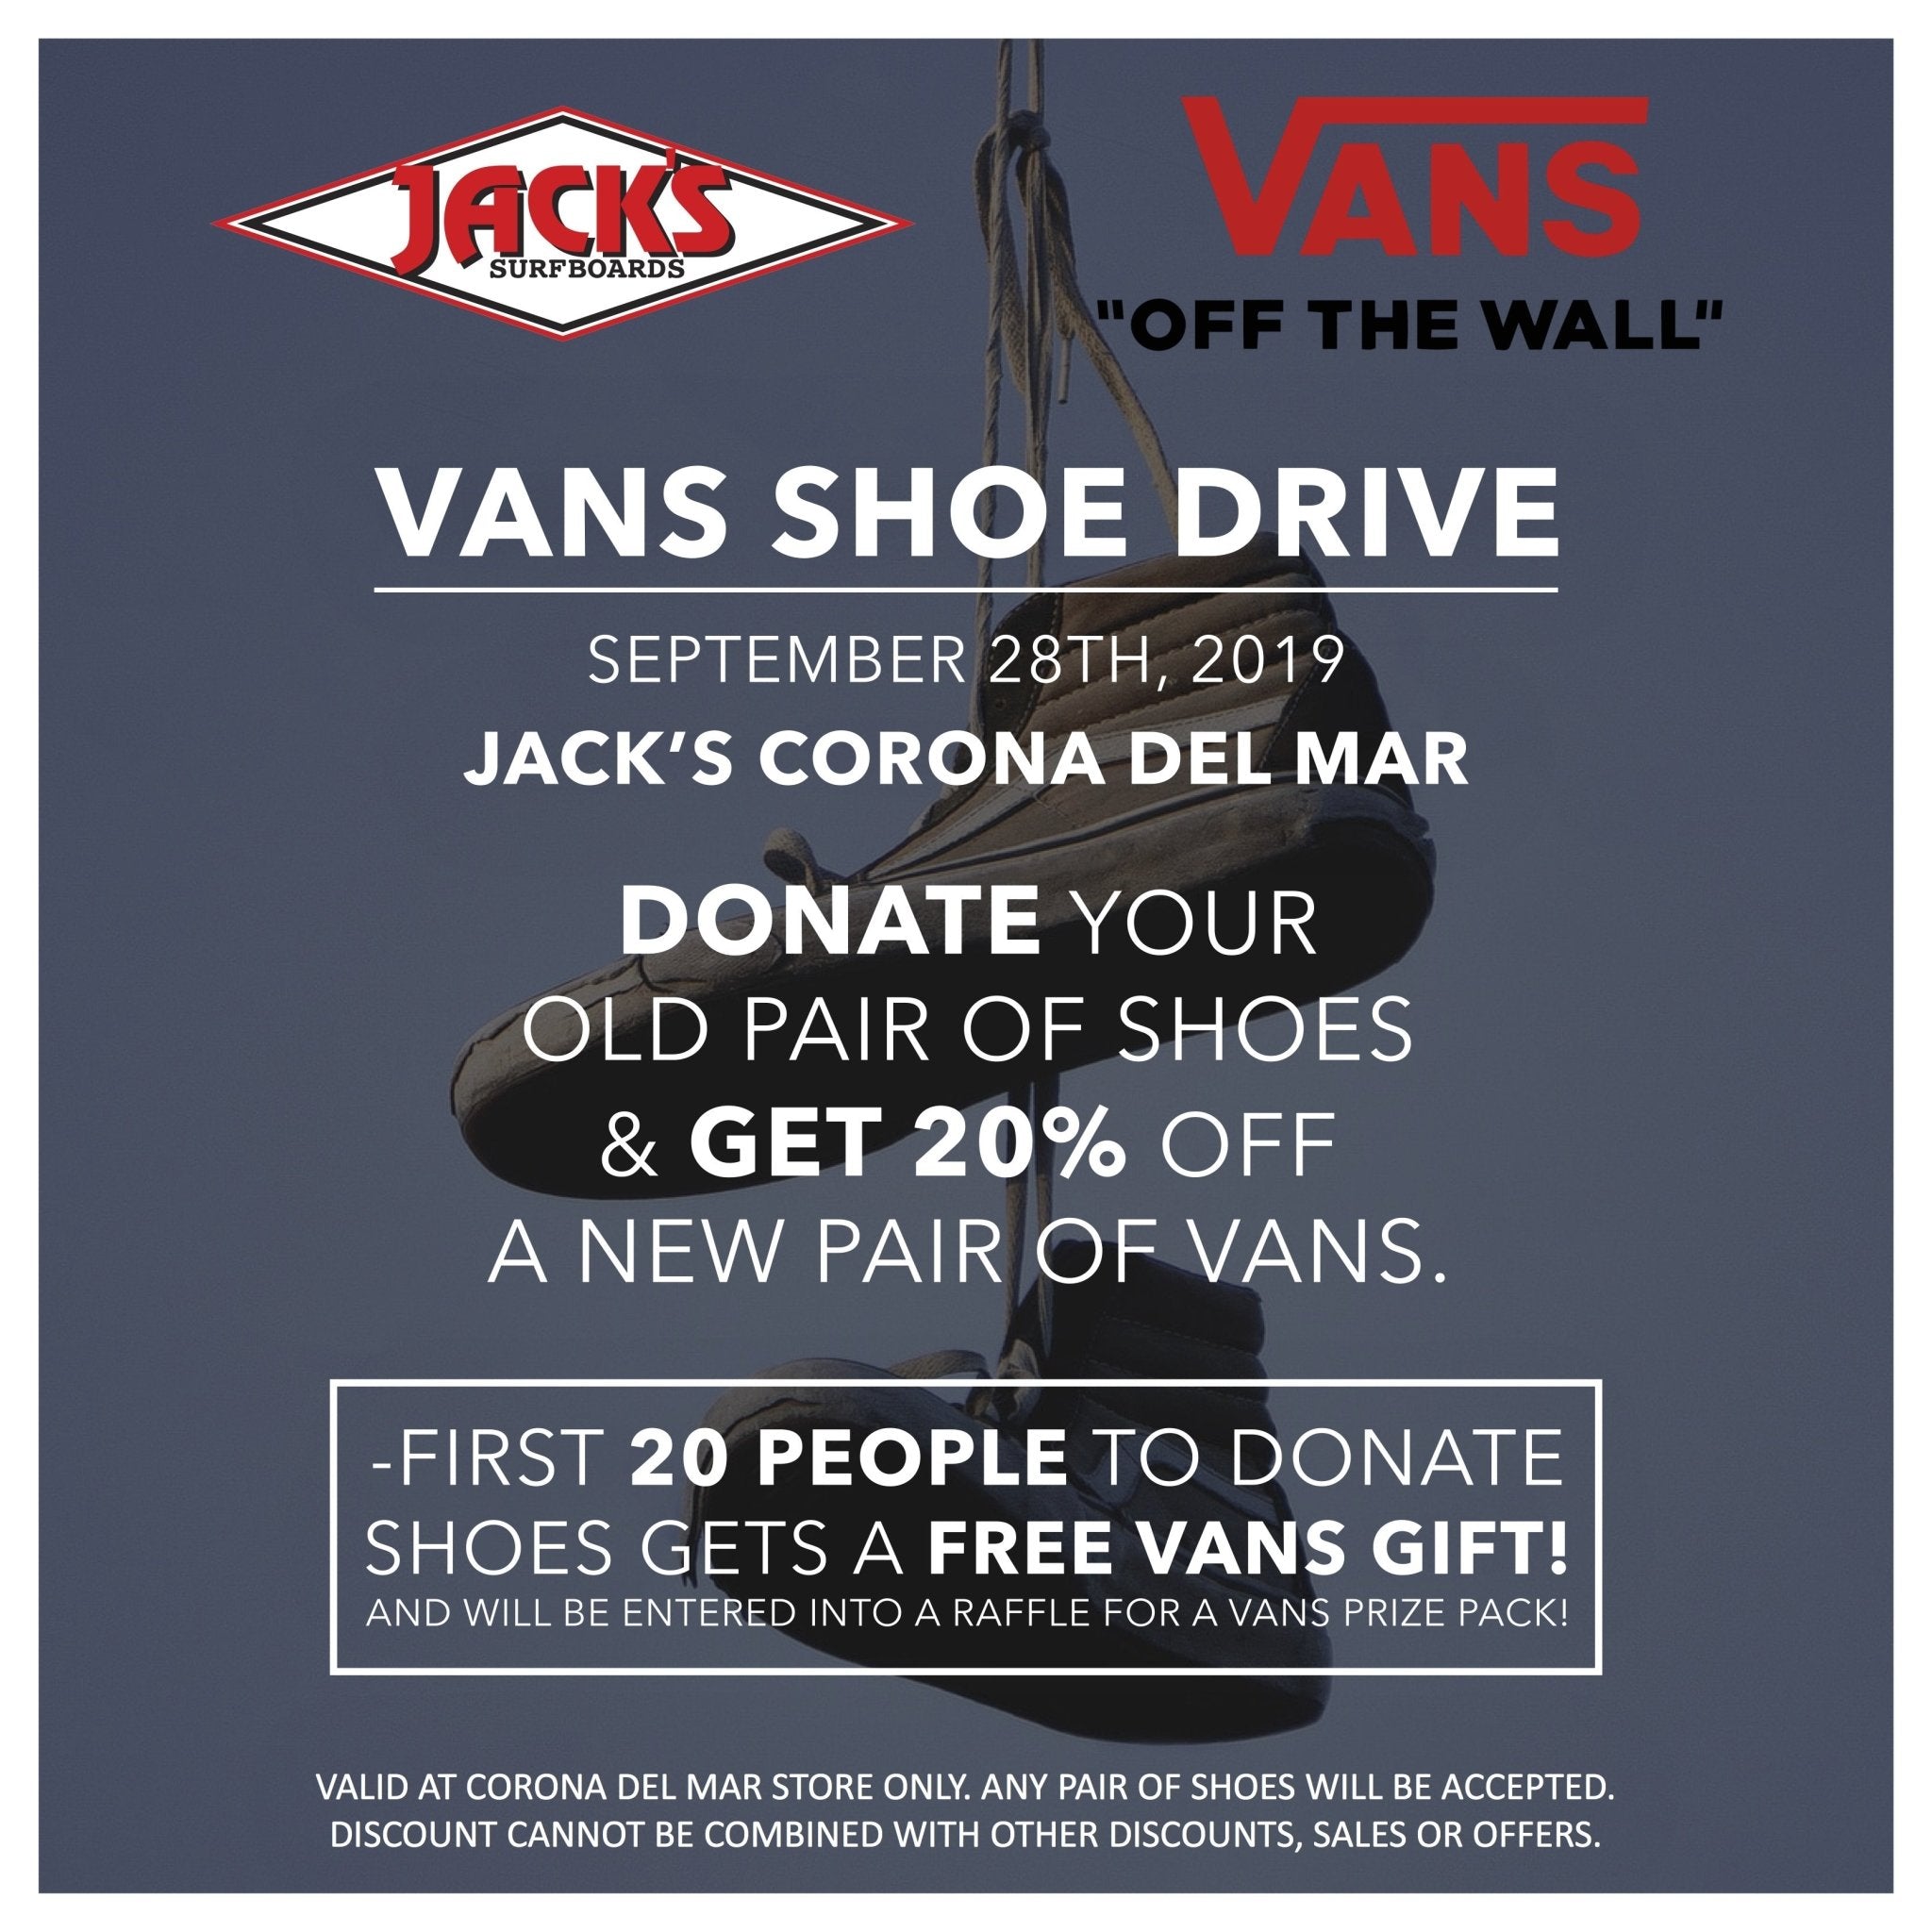 Vans Shoe Drive | Jack's Surfboards